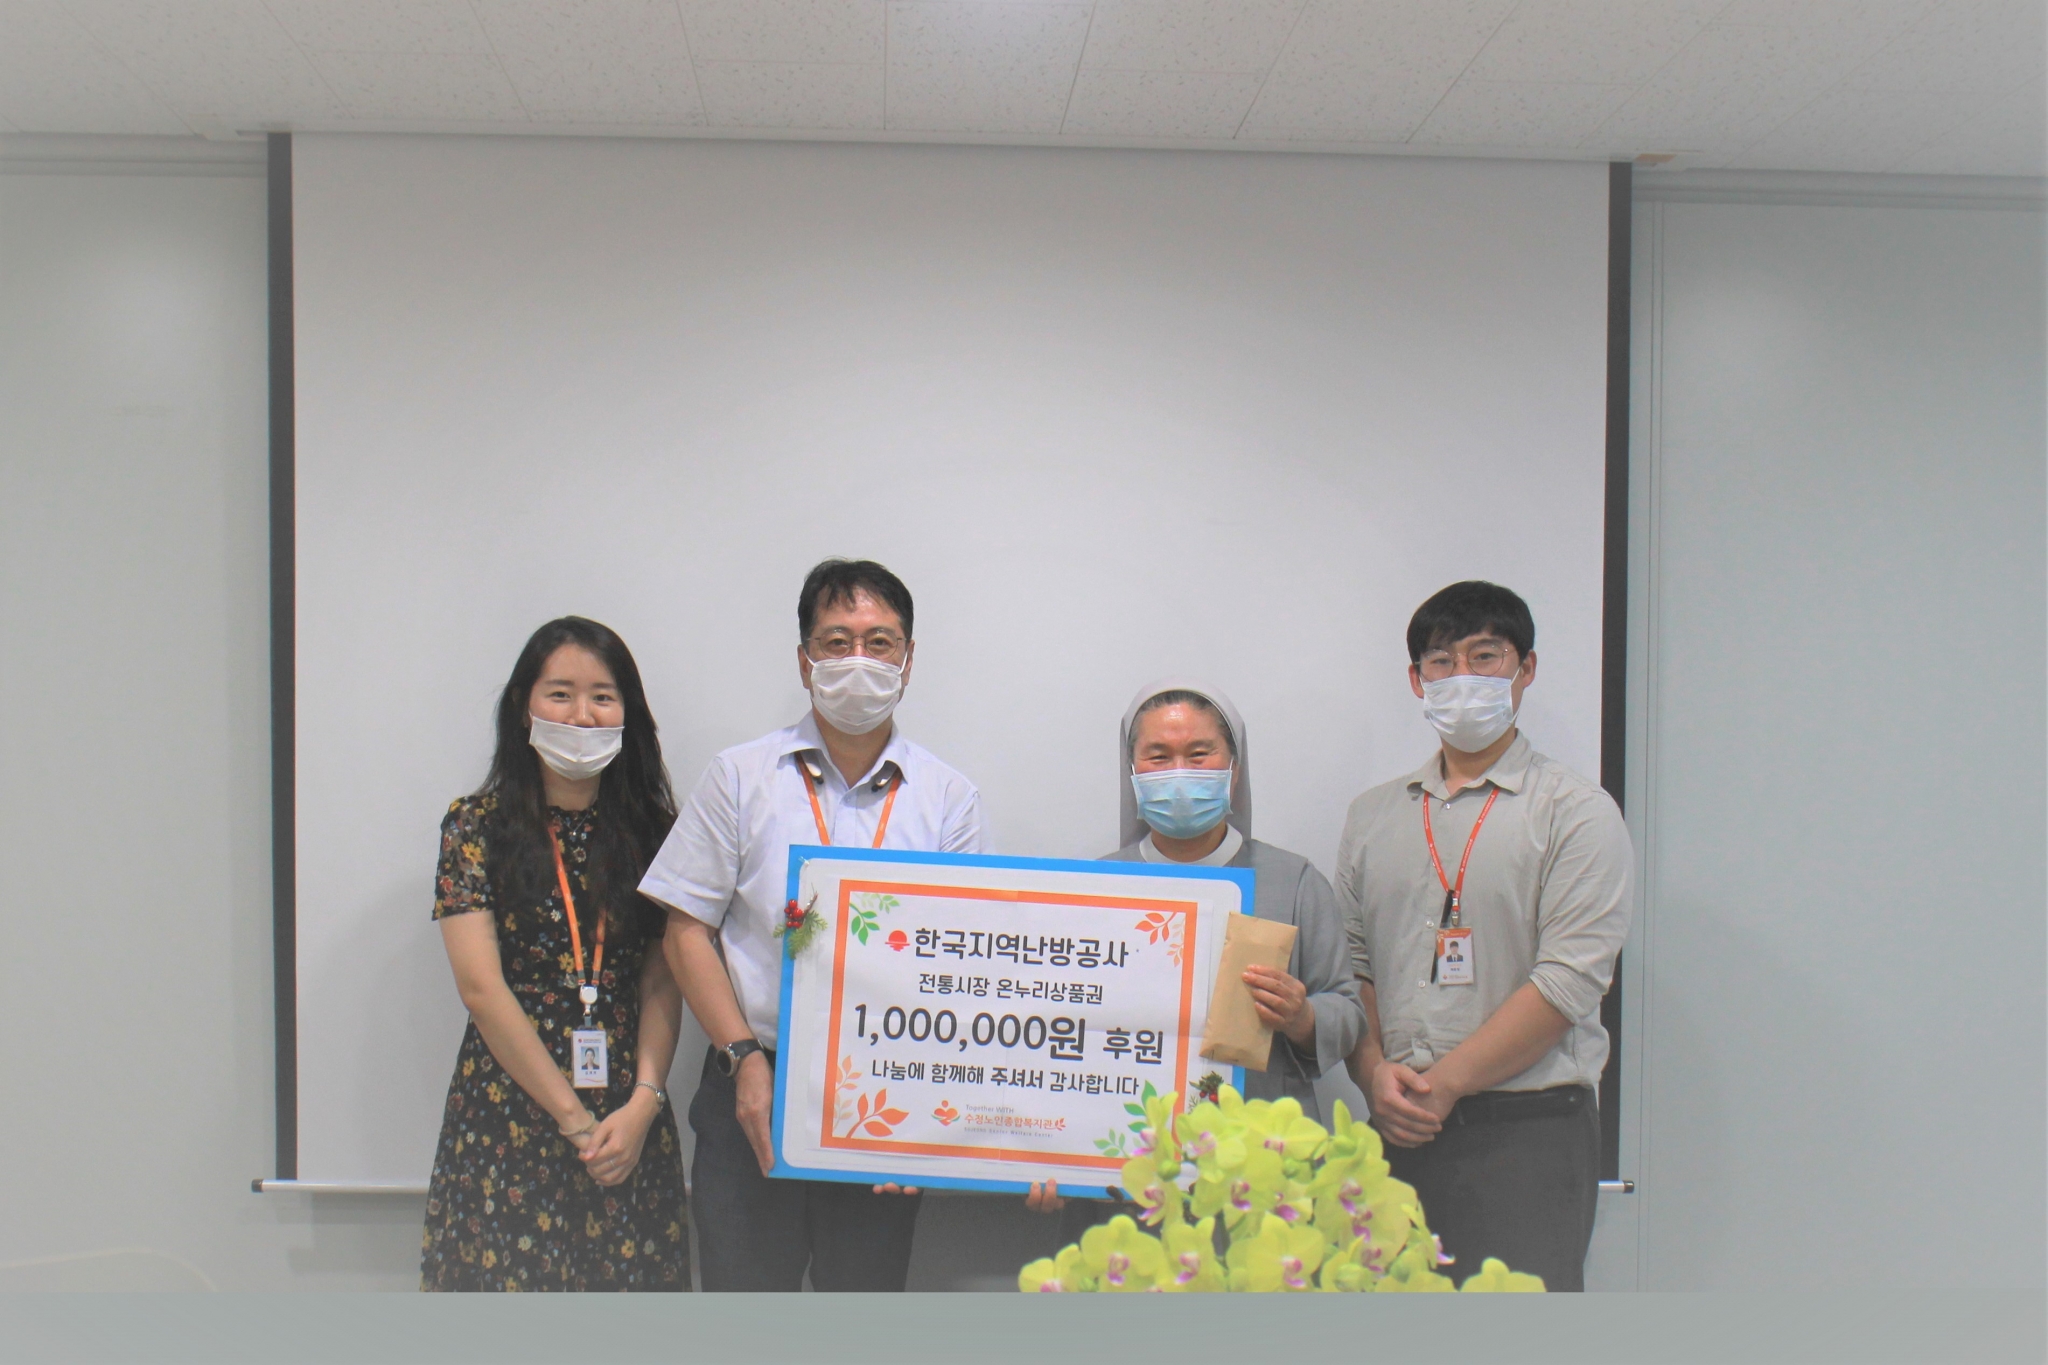 한국지역난방공사에서 온누리상품권 1,000,000원을 후원해주셨습니다!